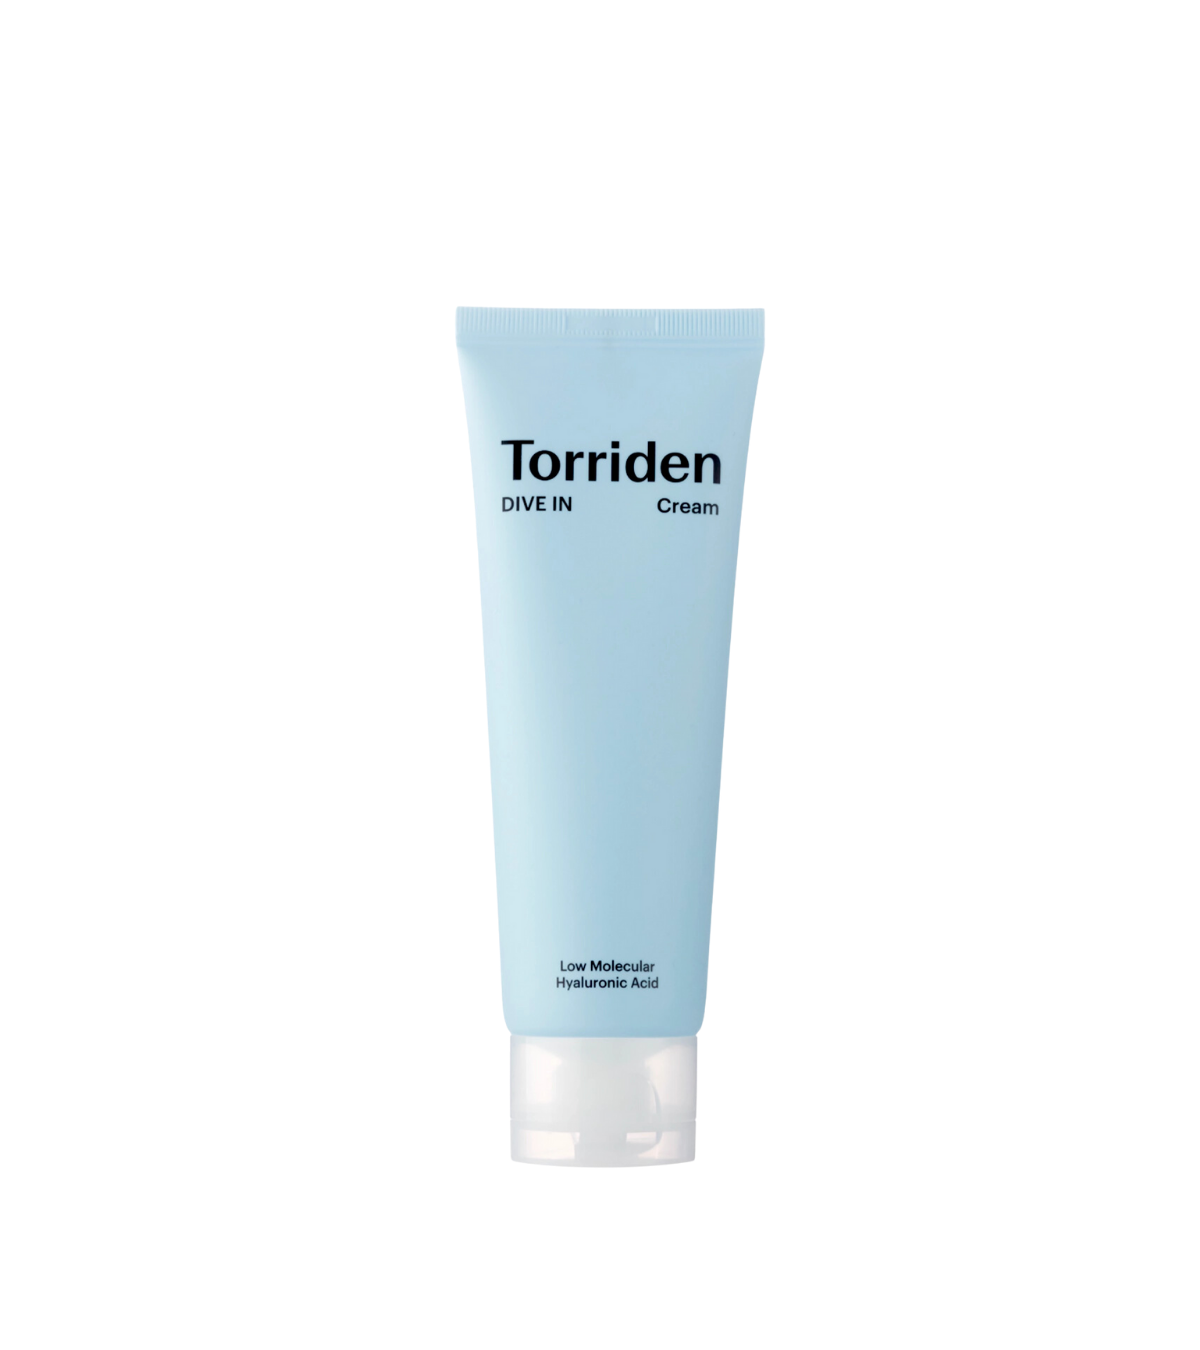 Torriden - DIVE-IN Low Molecule Hyaluronic Acid Cream, Torriden | Meka.sk